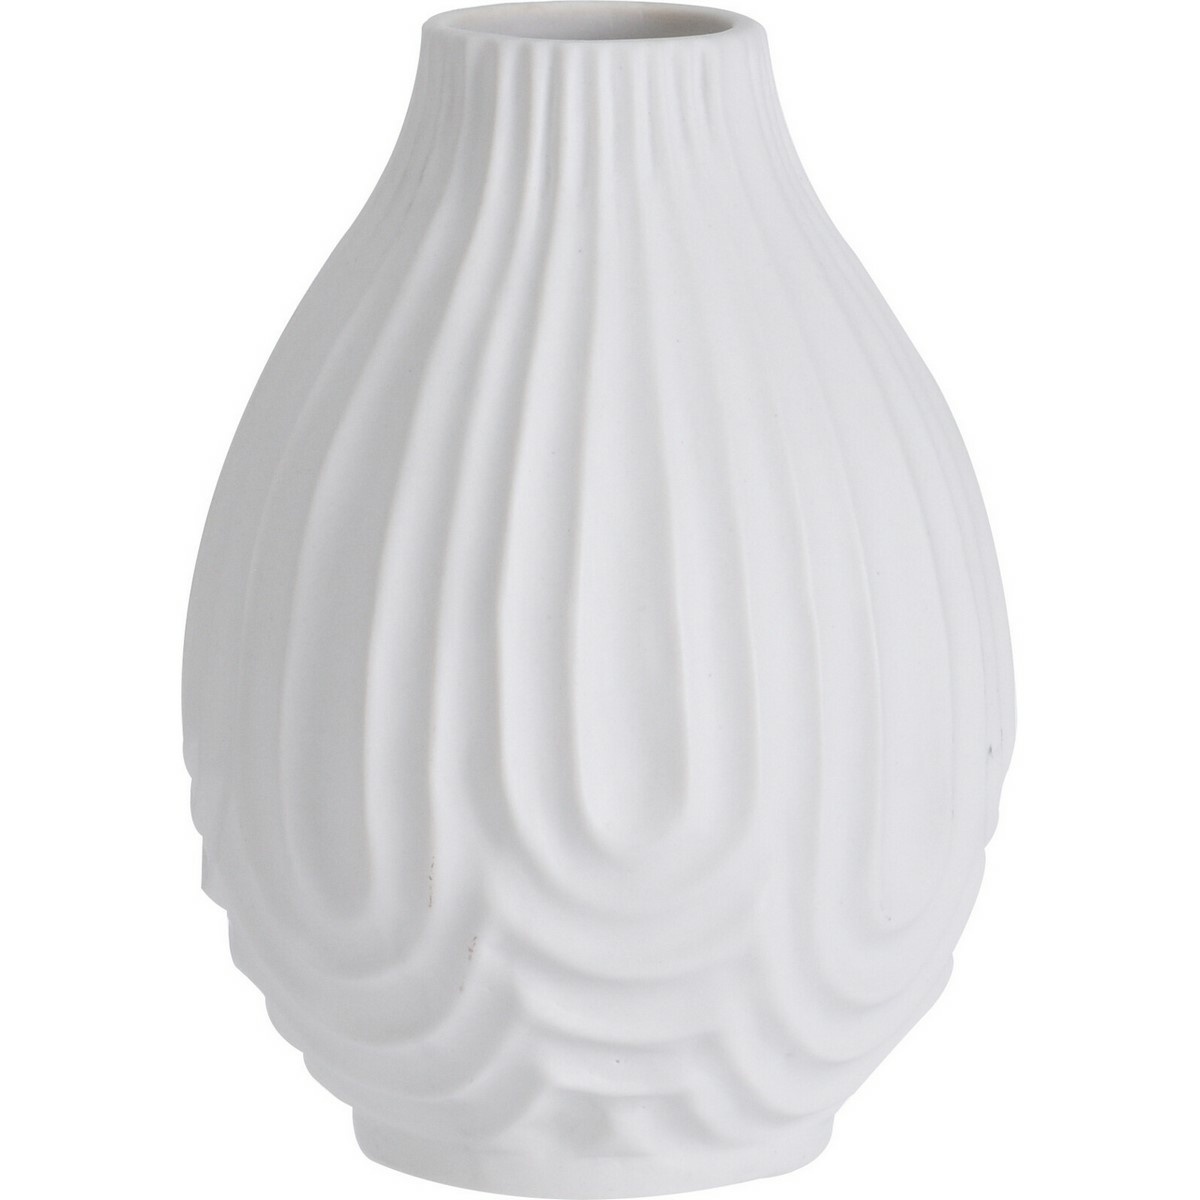 Porcelánová váza Andaluse bílá